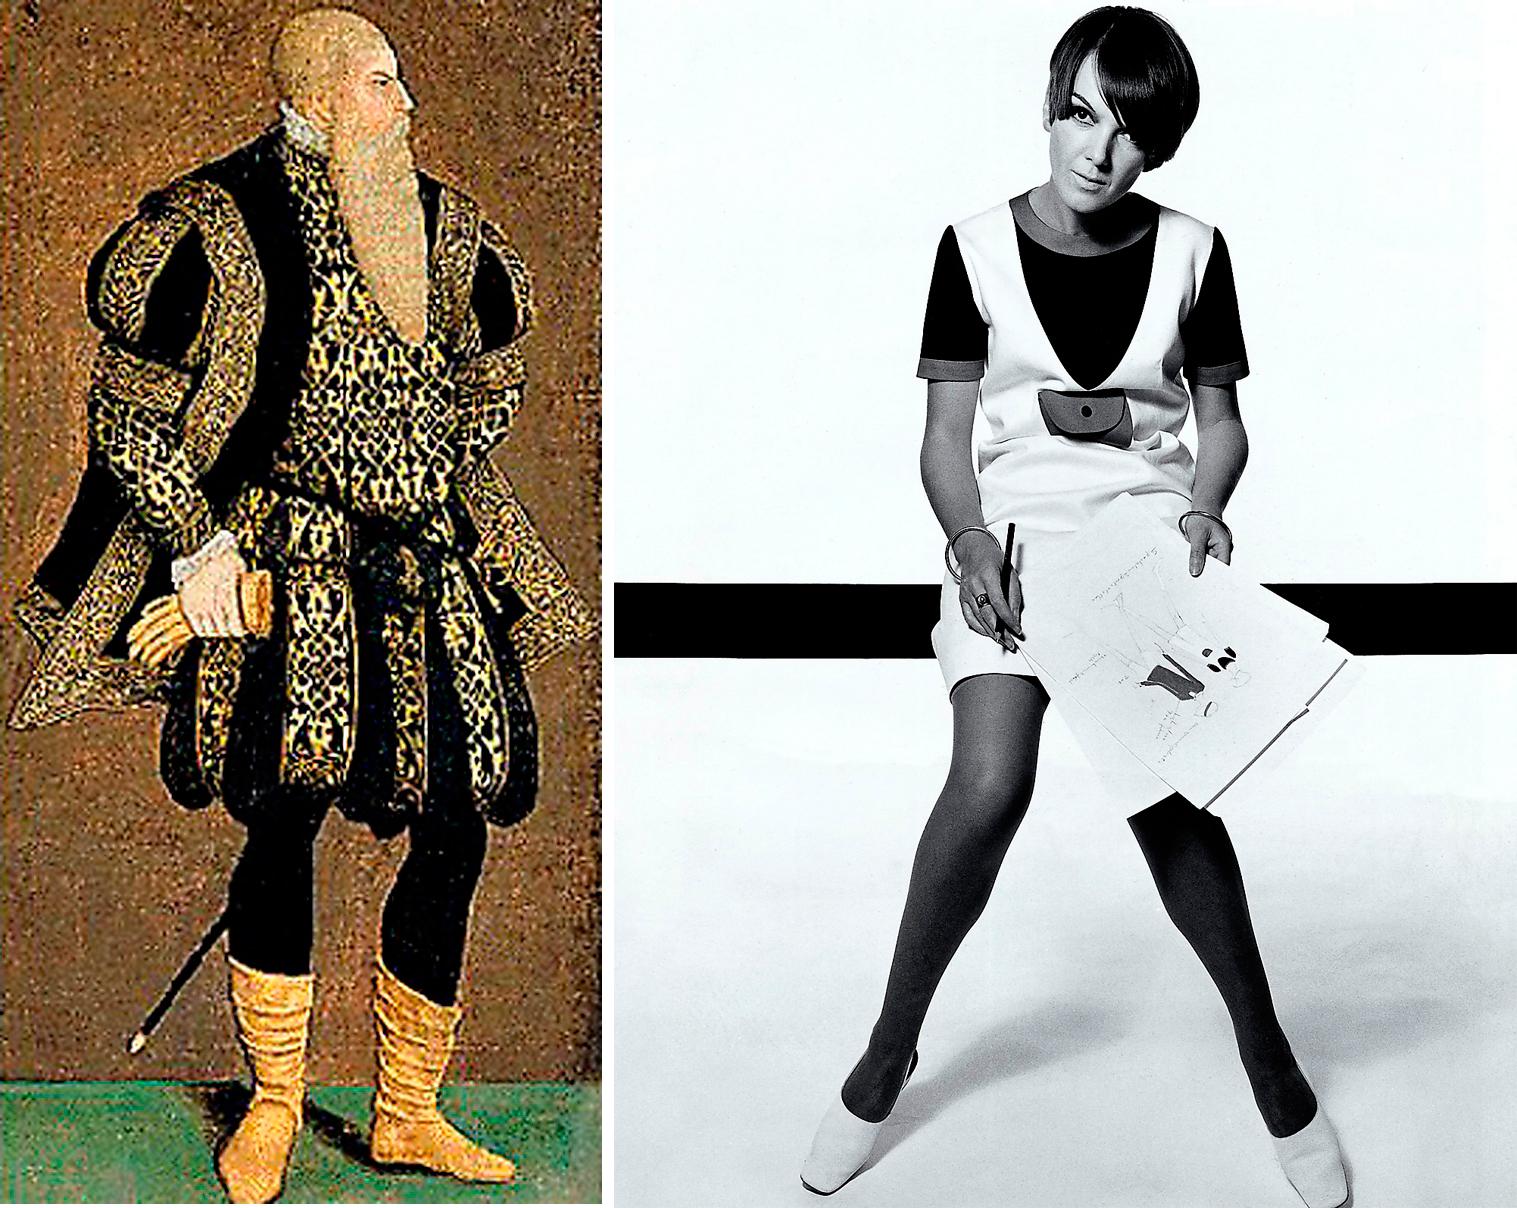 Bentrikåer var ett vanligt klädesplagg på män redan på 1500-talet, som här på Gustav Vasa. Mary Quant (t h) uppfann den moderna versionen av strumpbyxan.
Foto: : Wikimedia, Aftonbladet Arkiv